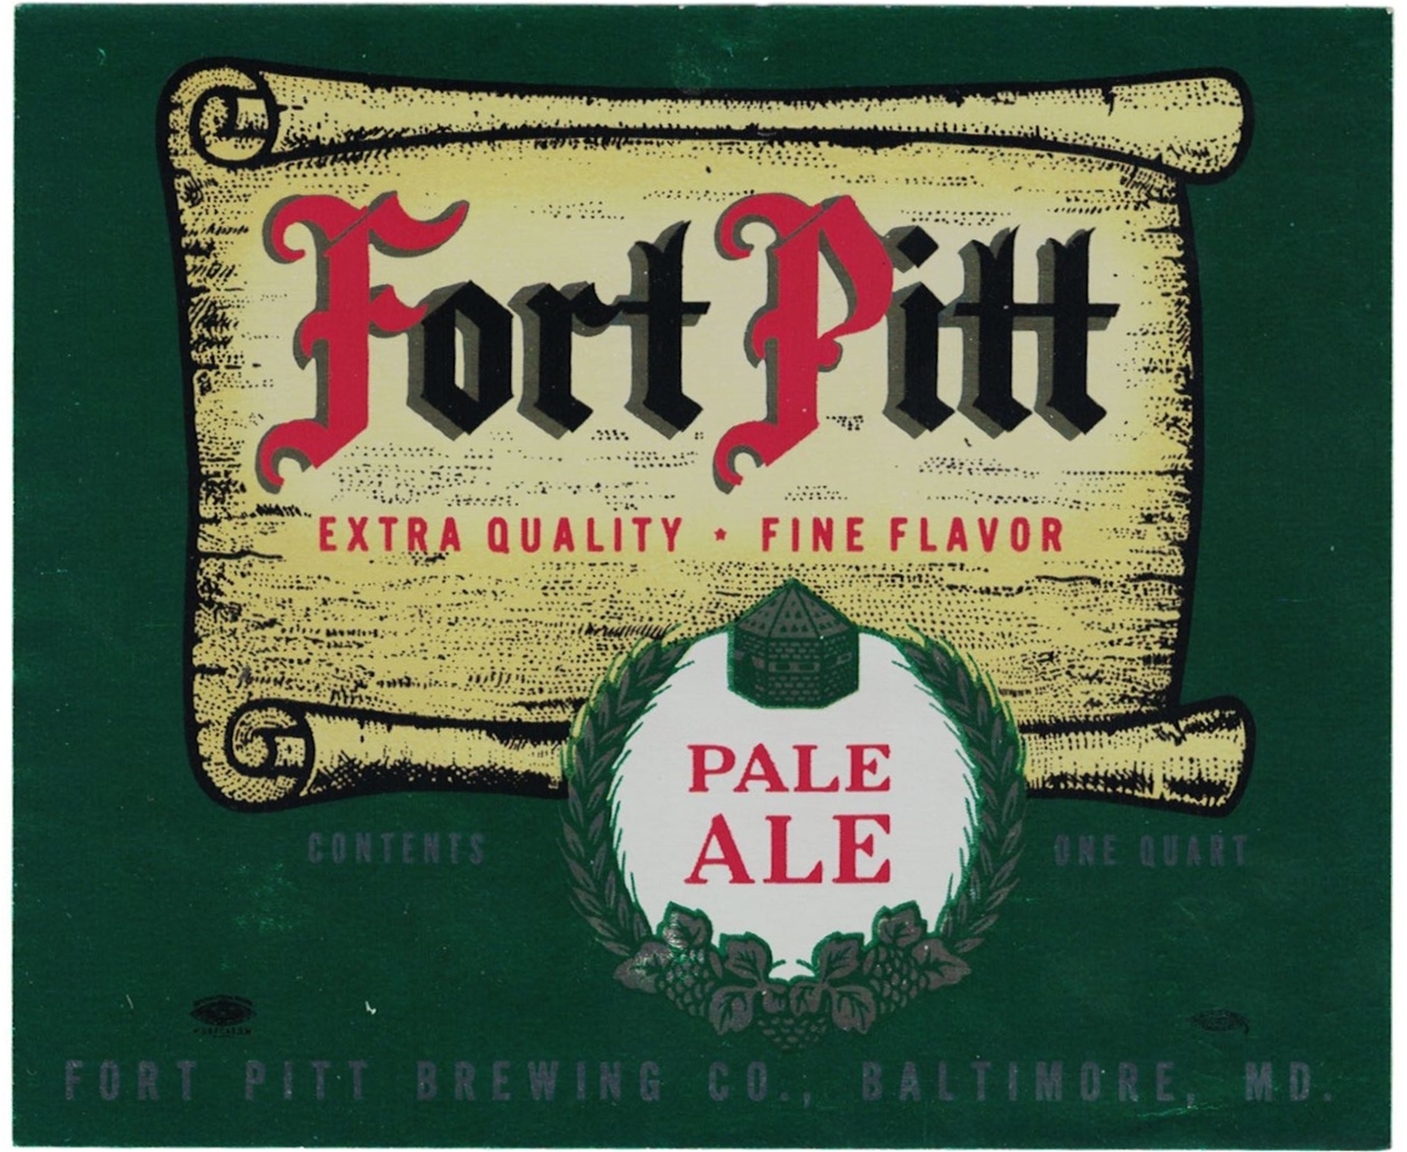 Fort Pitt Pale Ale Label